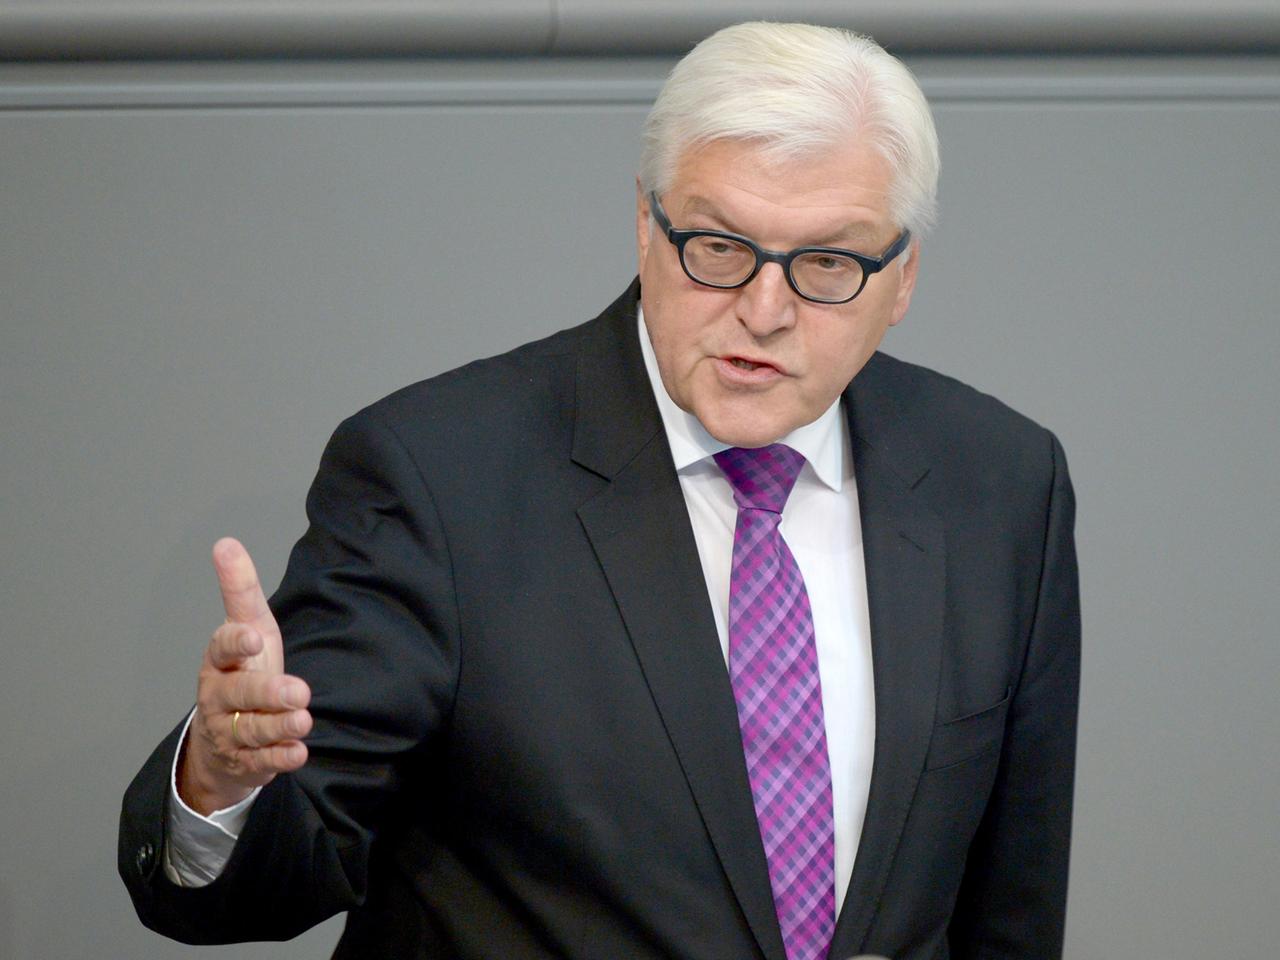 Bundesaußenminister Frank-Walter Steinmeier (SPD) spricht am 11.09.2014 im Deutschen Bundestag in Berlin zu den Abgeordneten.